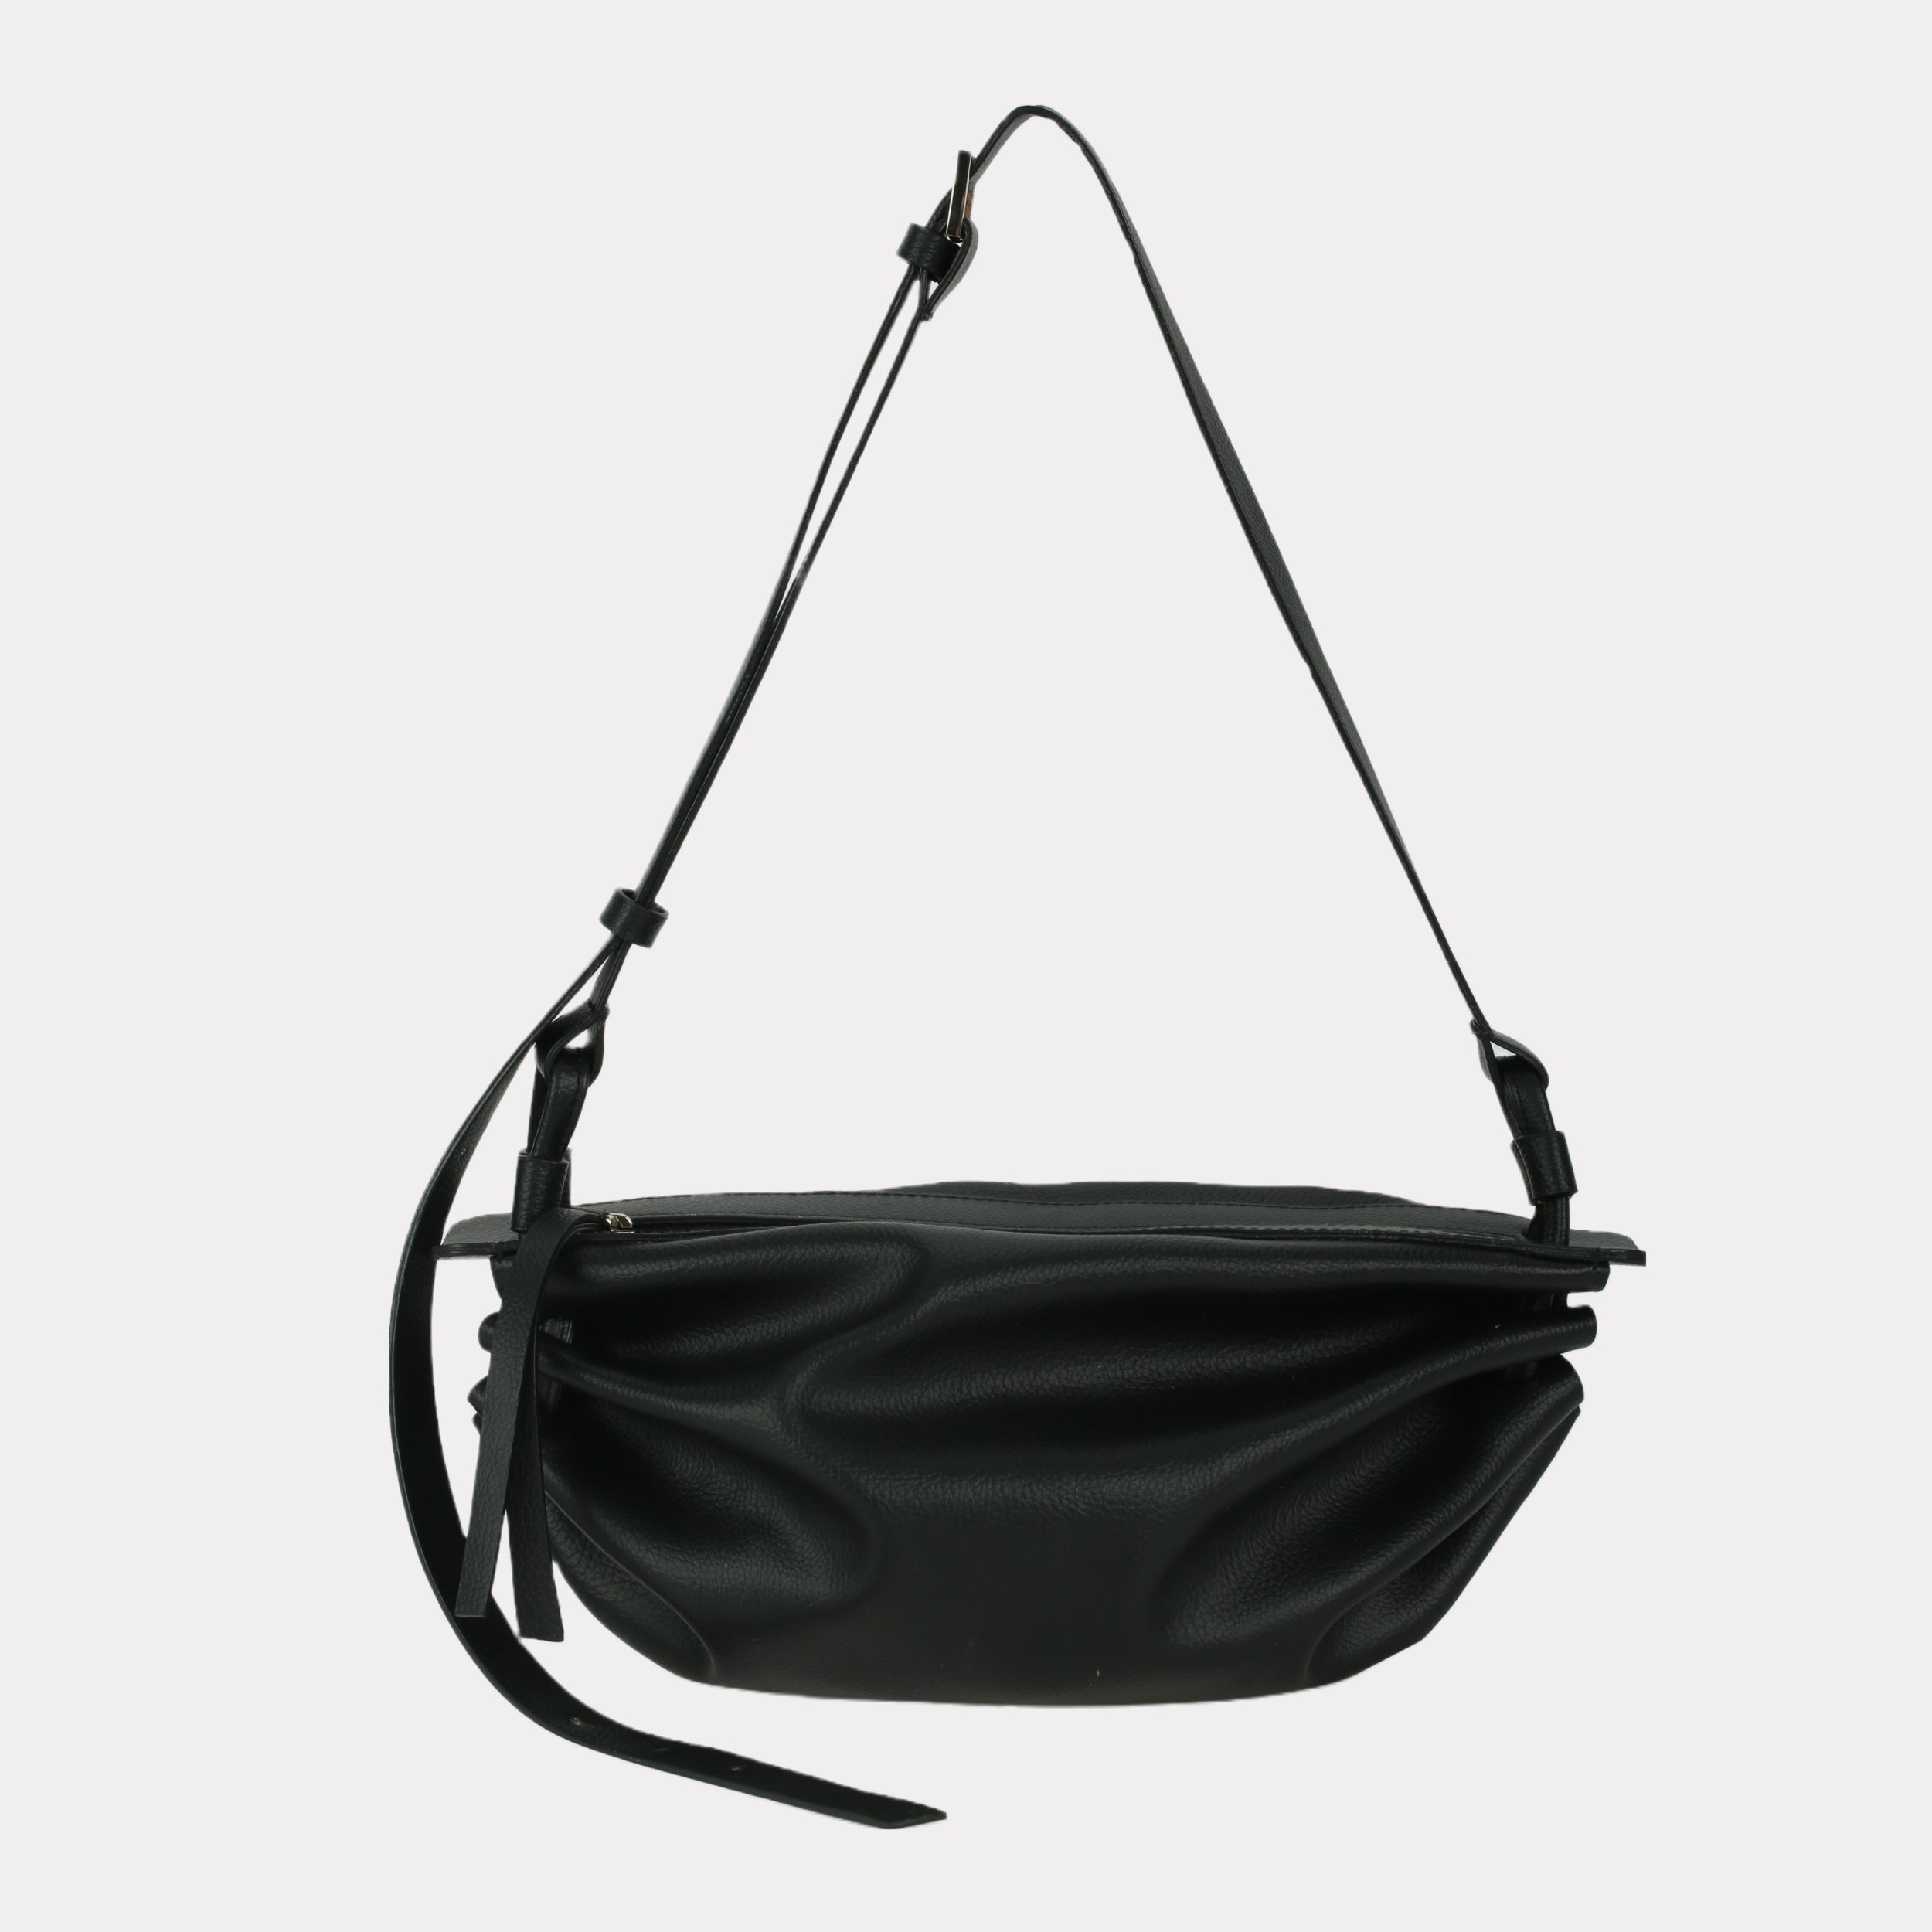 Túi xách BOAT size lớn (M) màu đen